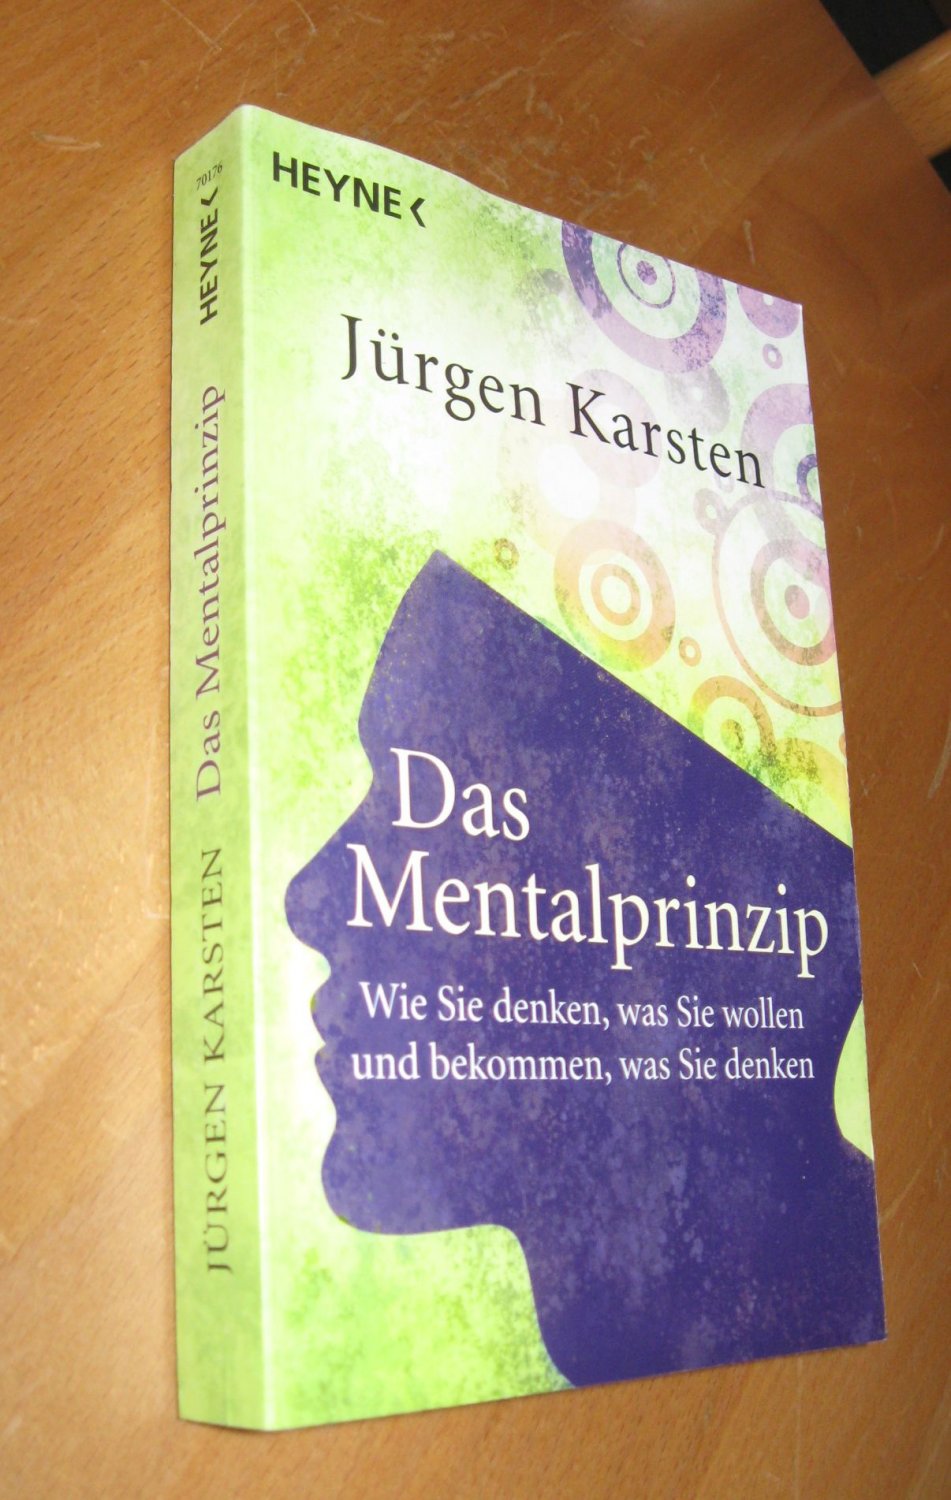 Das Mentalprinzip - Wie Sie denken, was Sie wollen und bekommen, was Sie denken - Jürgen Karsten